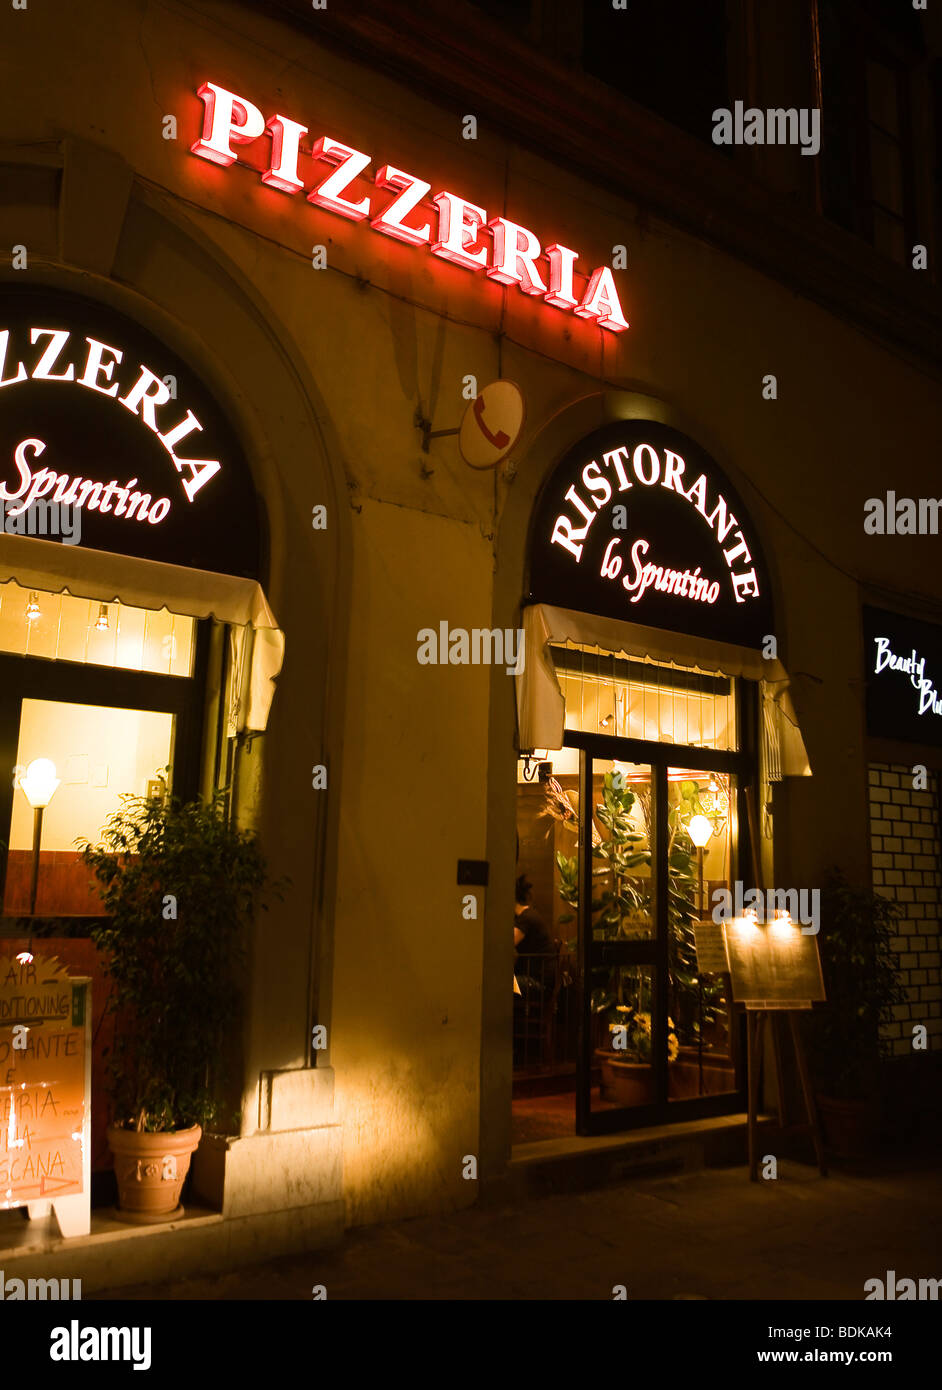 Pizzeria, Florence, Italy Stock Photo